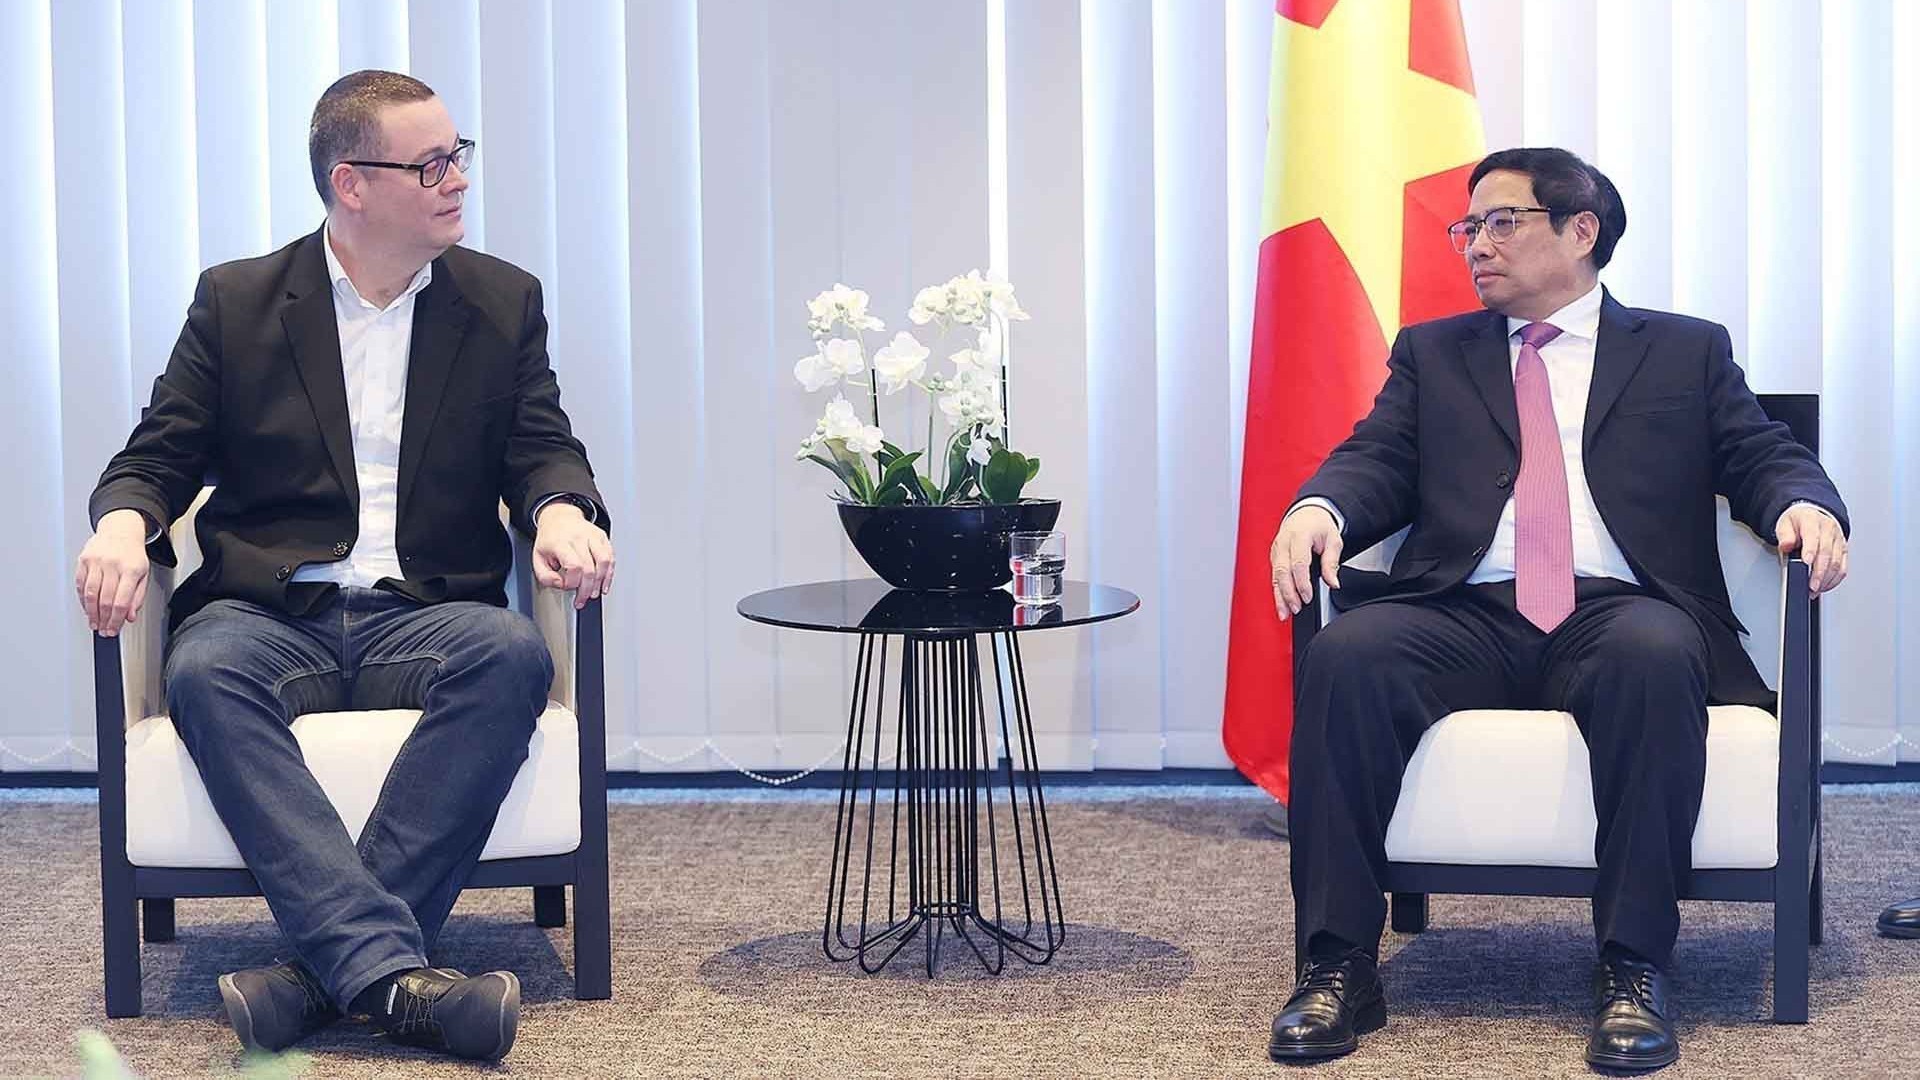 Hợp tác kênh Đảng giữa Việt Nam và Bỉ phát triển tích cực